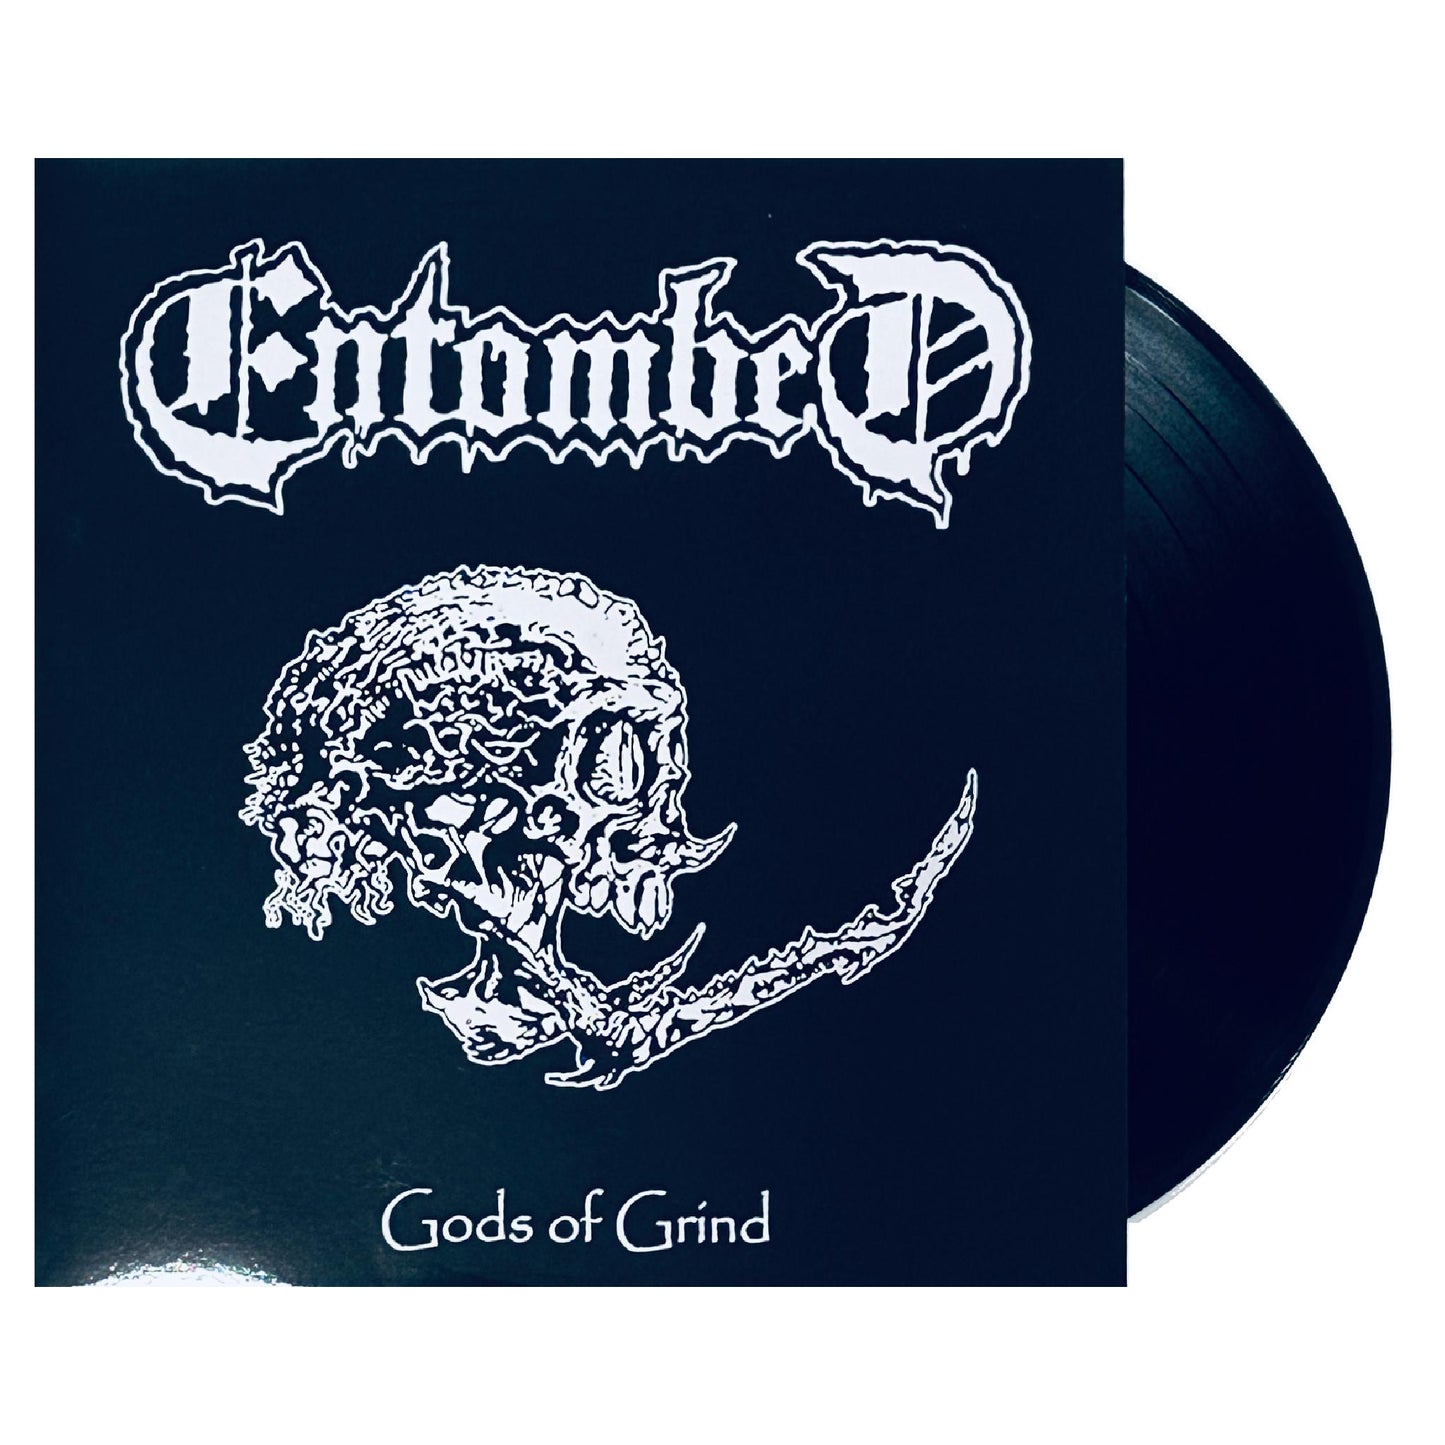 ENT0MBED - Gods Of Grind Live 1992 LP 12" (black vinyl)